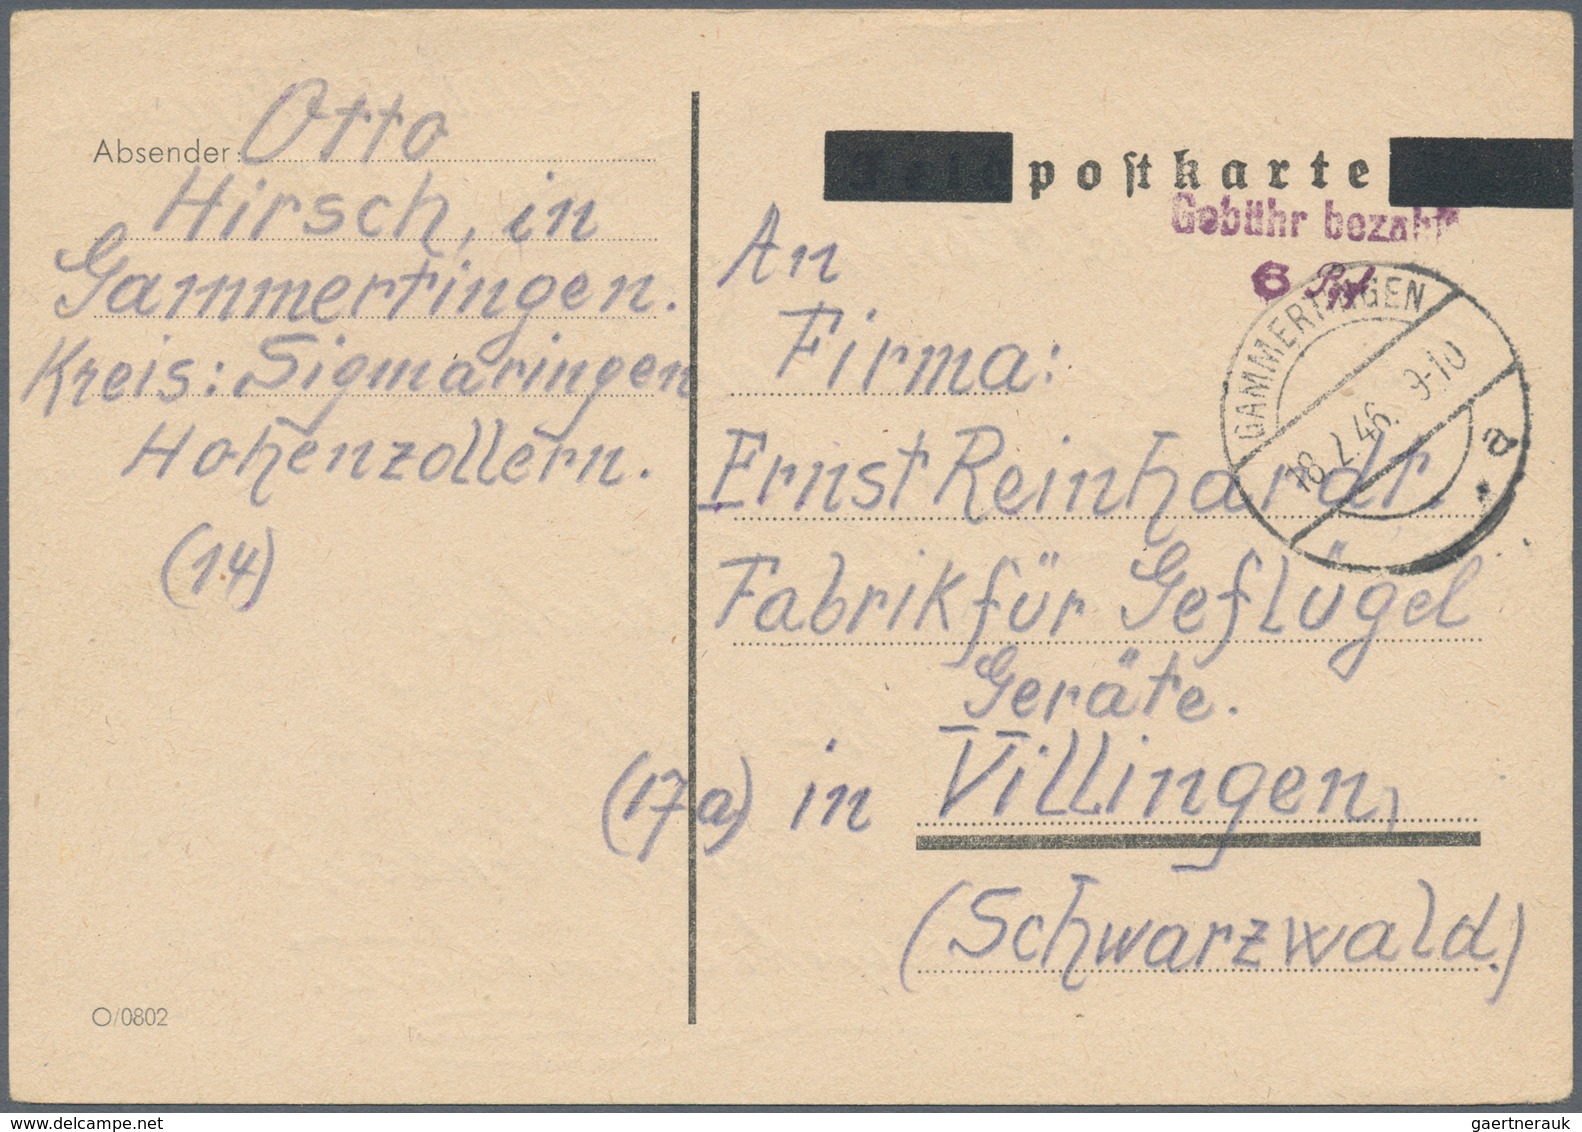 Alliierte Besetzung - Gebühr Bezahlt: 1945/1949, Württemberg Plz 14a/b, saubere Partie von ca. 173 G